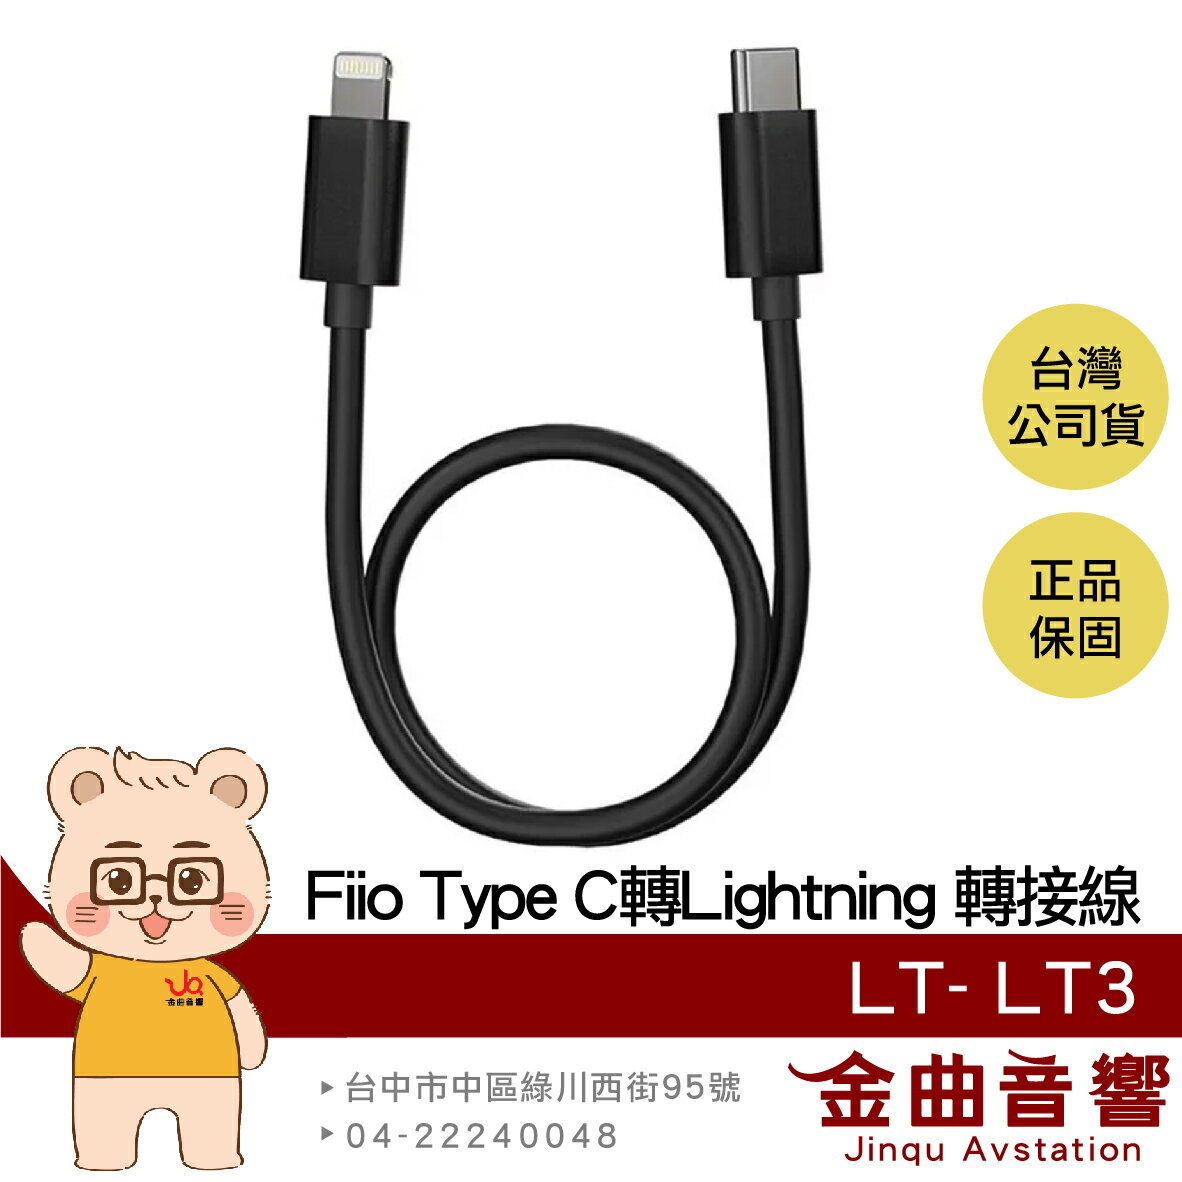 【APP下單點數9%回饋】FiiO LT-LT3 Type-C to Lightning OTG 鋁合金 適用 iPhone 轉接線| 金曲音響